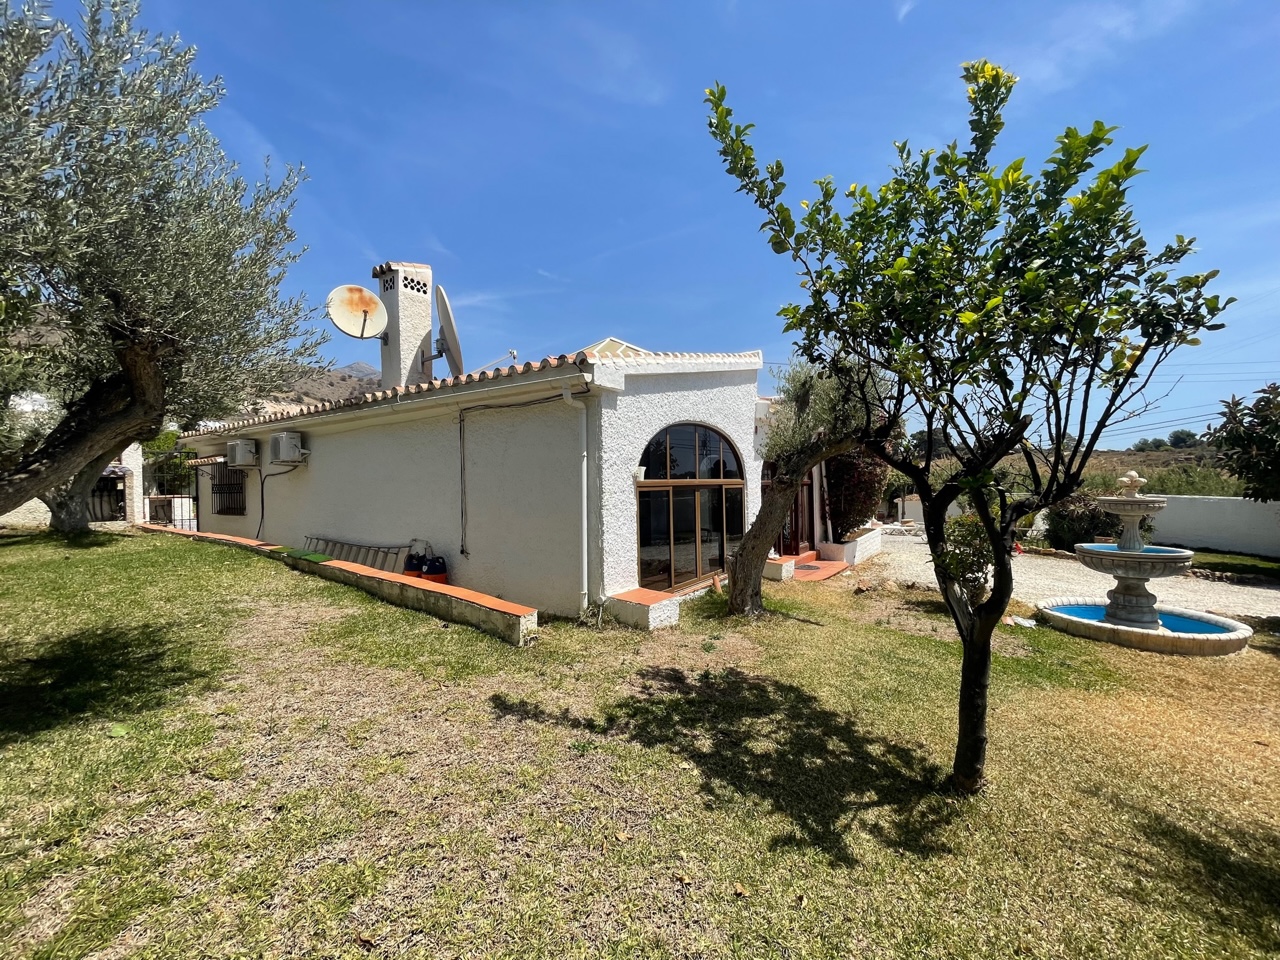 4BR Villa for sale in Fuente del Badén, Nerja